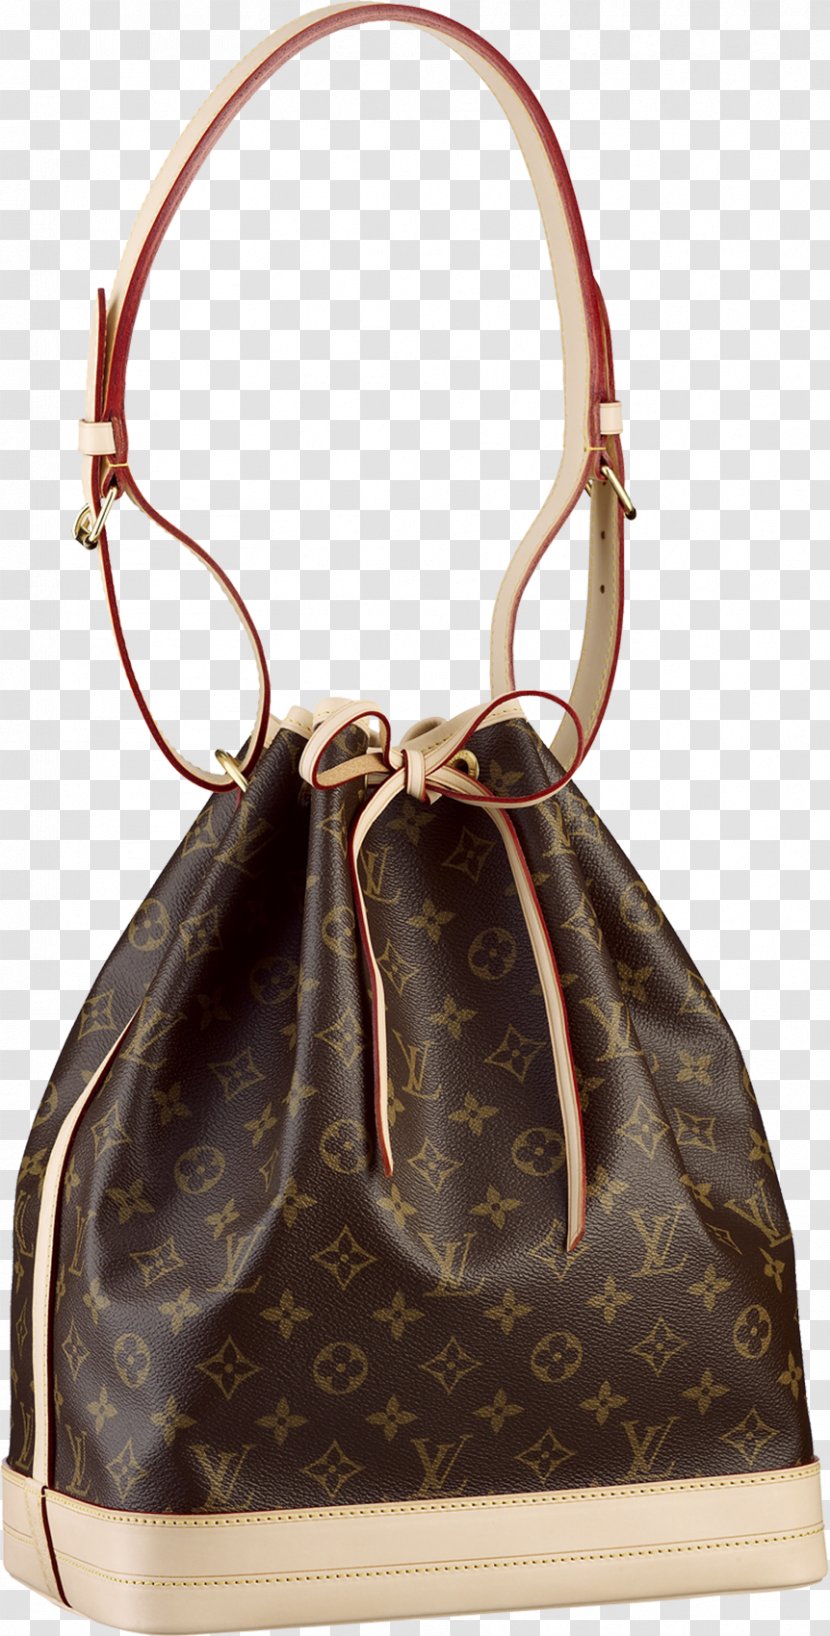 Chanel Louis Vuitton Handbag Tote Bag Transparent PNG